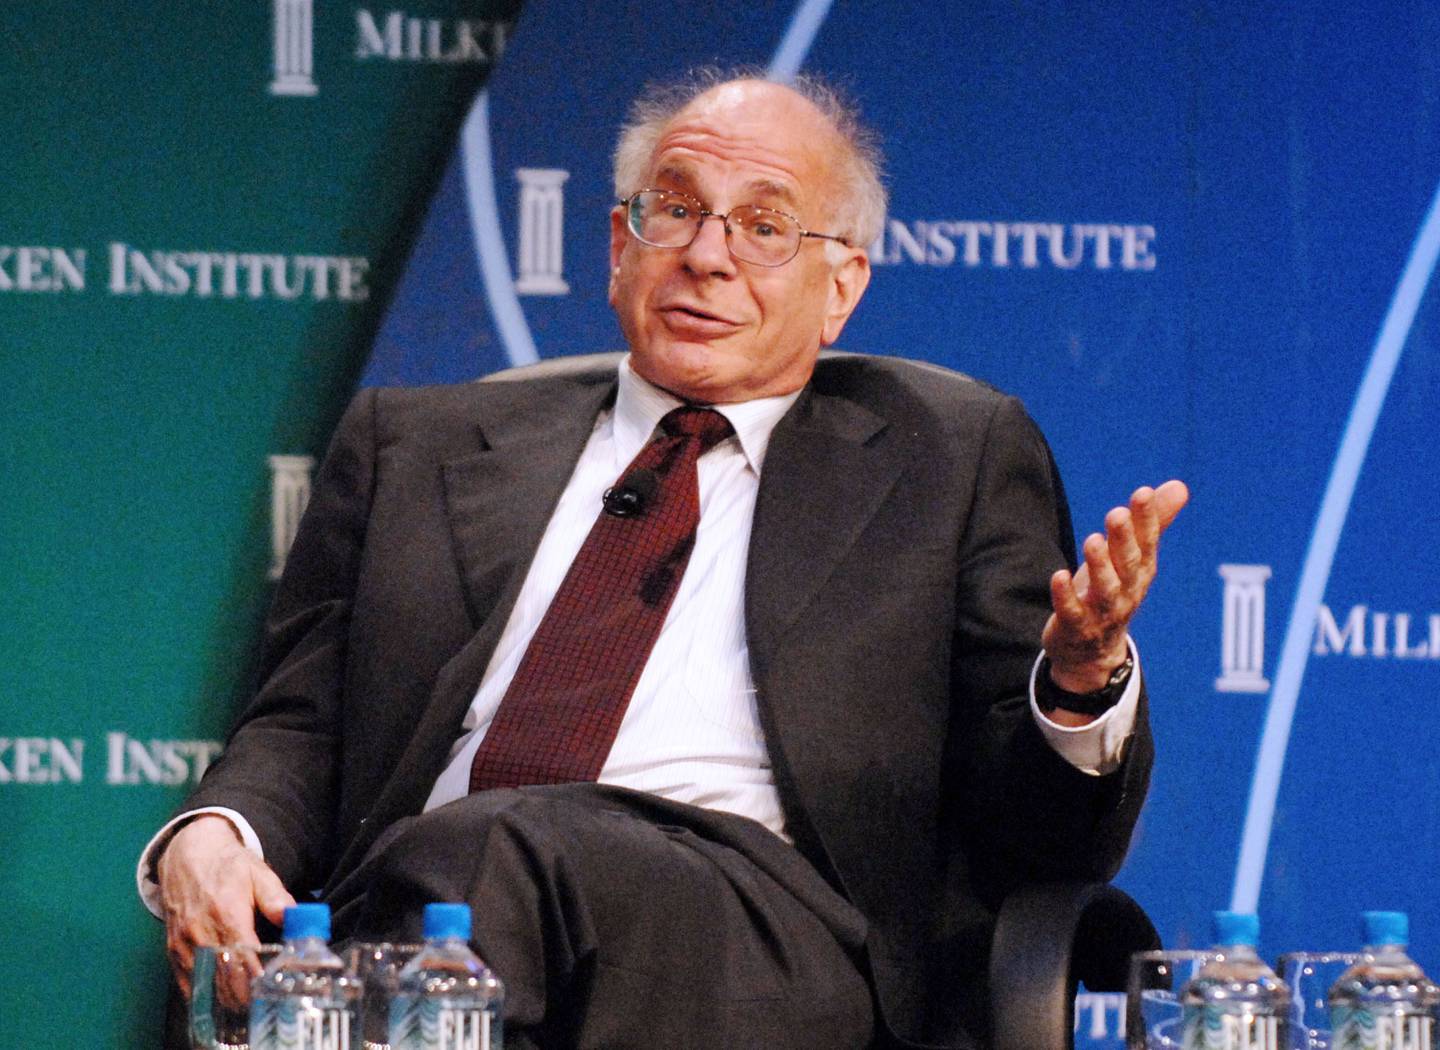 Daniel Kahneman está considerado uno de los padres de la economía del comportamiento y ganó el Premio Nobel de Economía en 2002 "por integrar los conocimientos de la investigación psicológica en la ciencia económica, especialmente en lo que se refiere al juicio humano y la toma de decisiones en condiciones de incertidumbre"